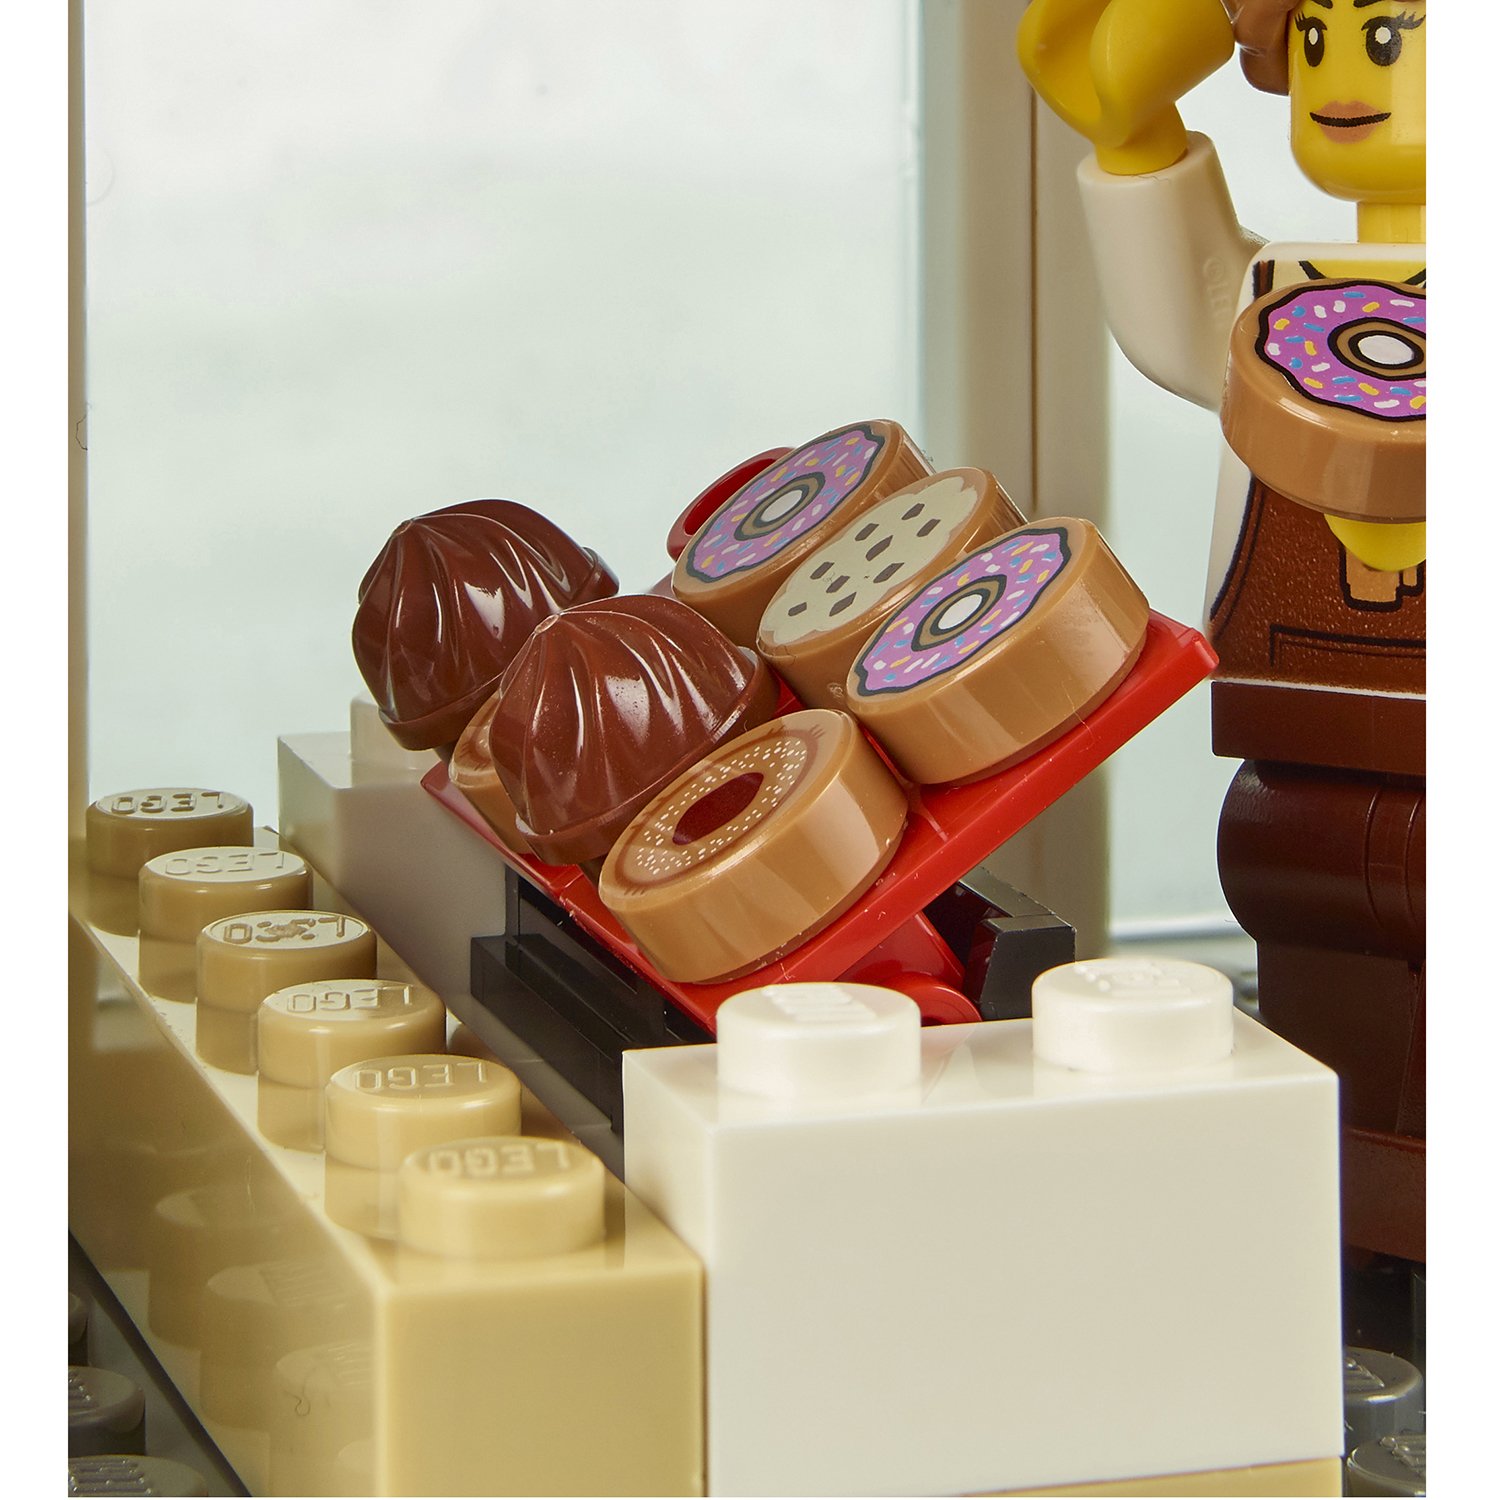 Lego City 60233 Открытие магазина по продаже пончиков